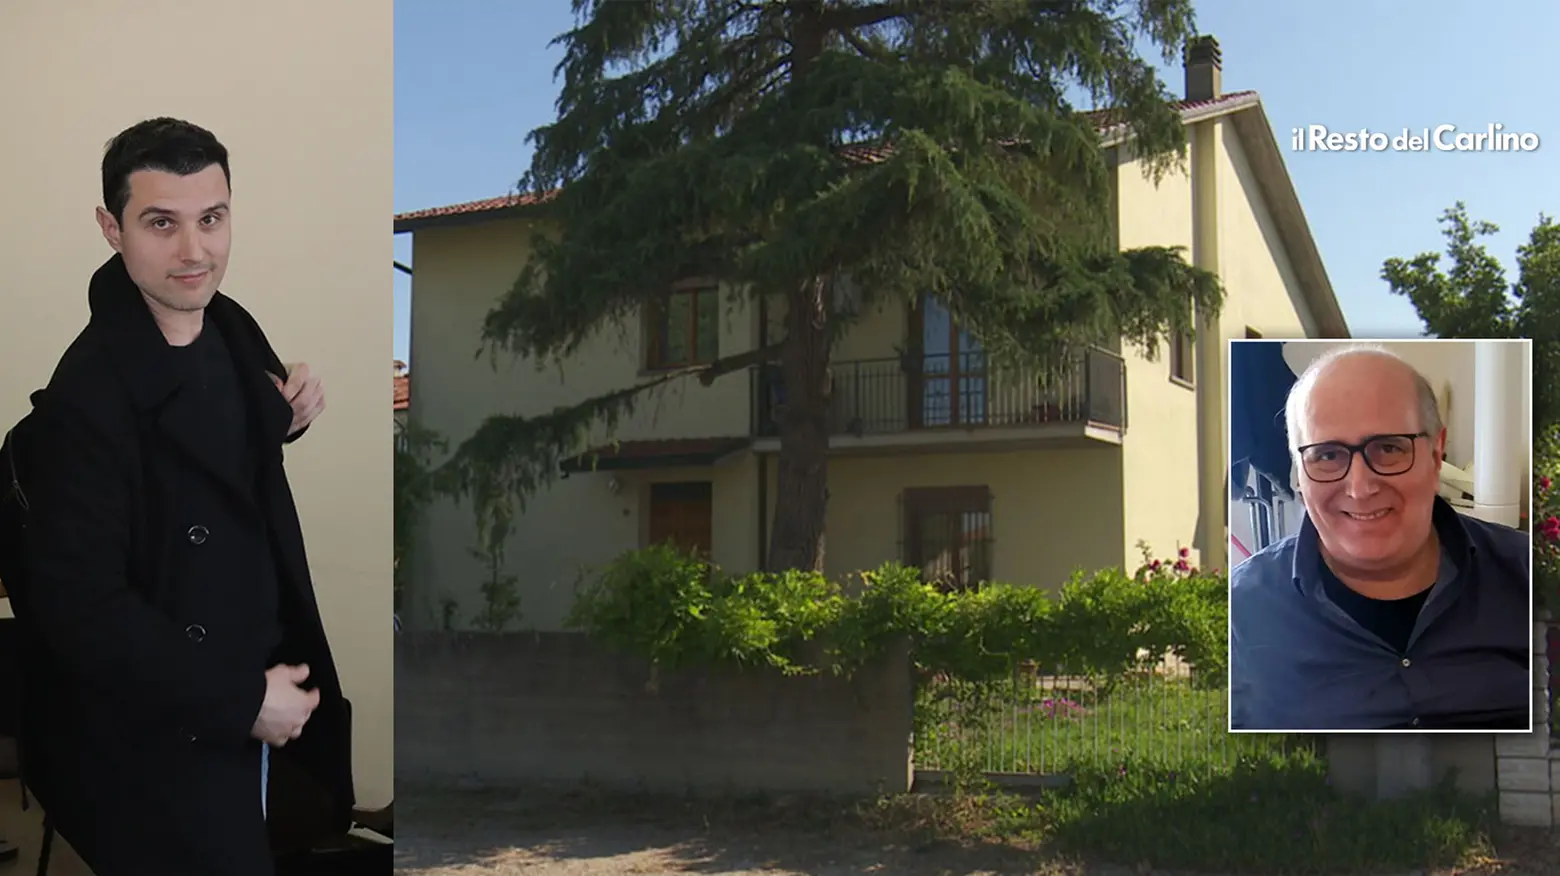 Da sinistra: Stefano Molducci e la casa dove il padre Danilo fu trovato morto